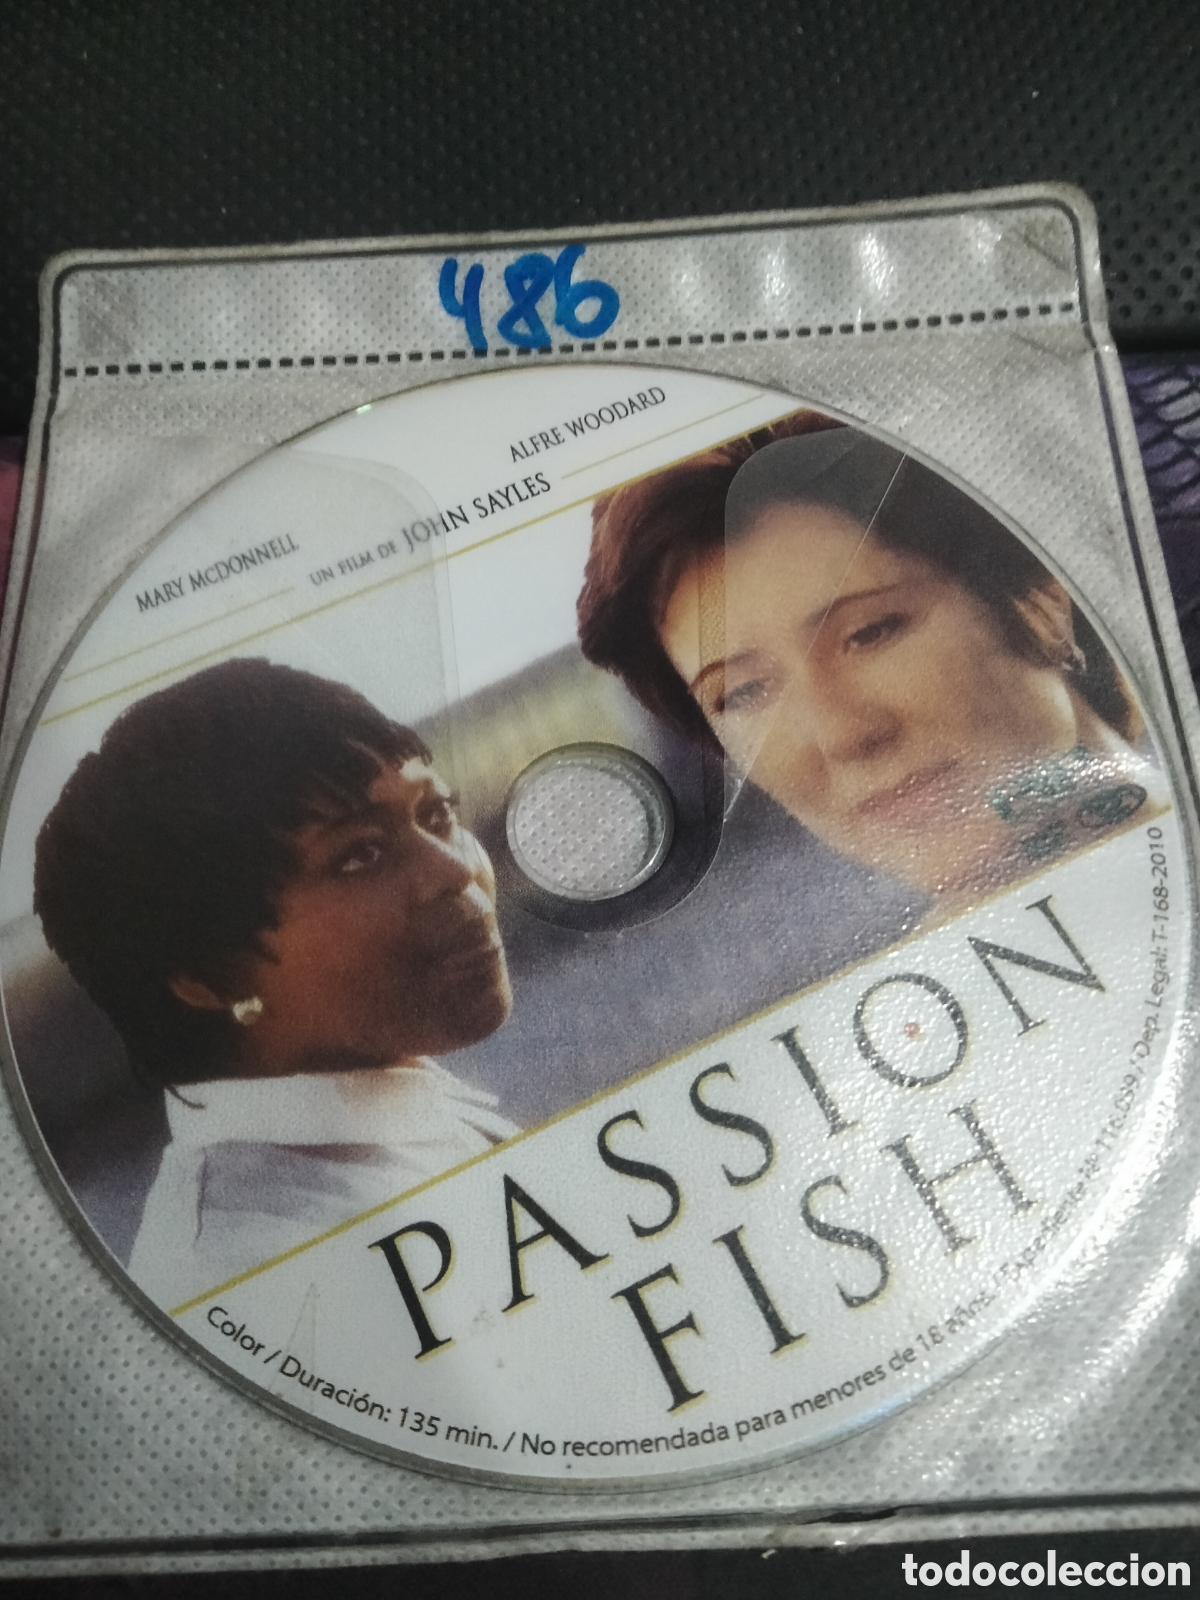 passion fish dvd 486 (disco solo) - Acheter Films de cinéma DVD